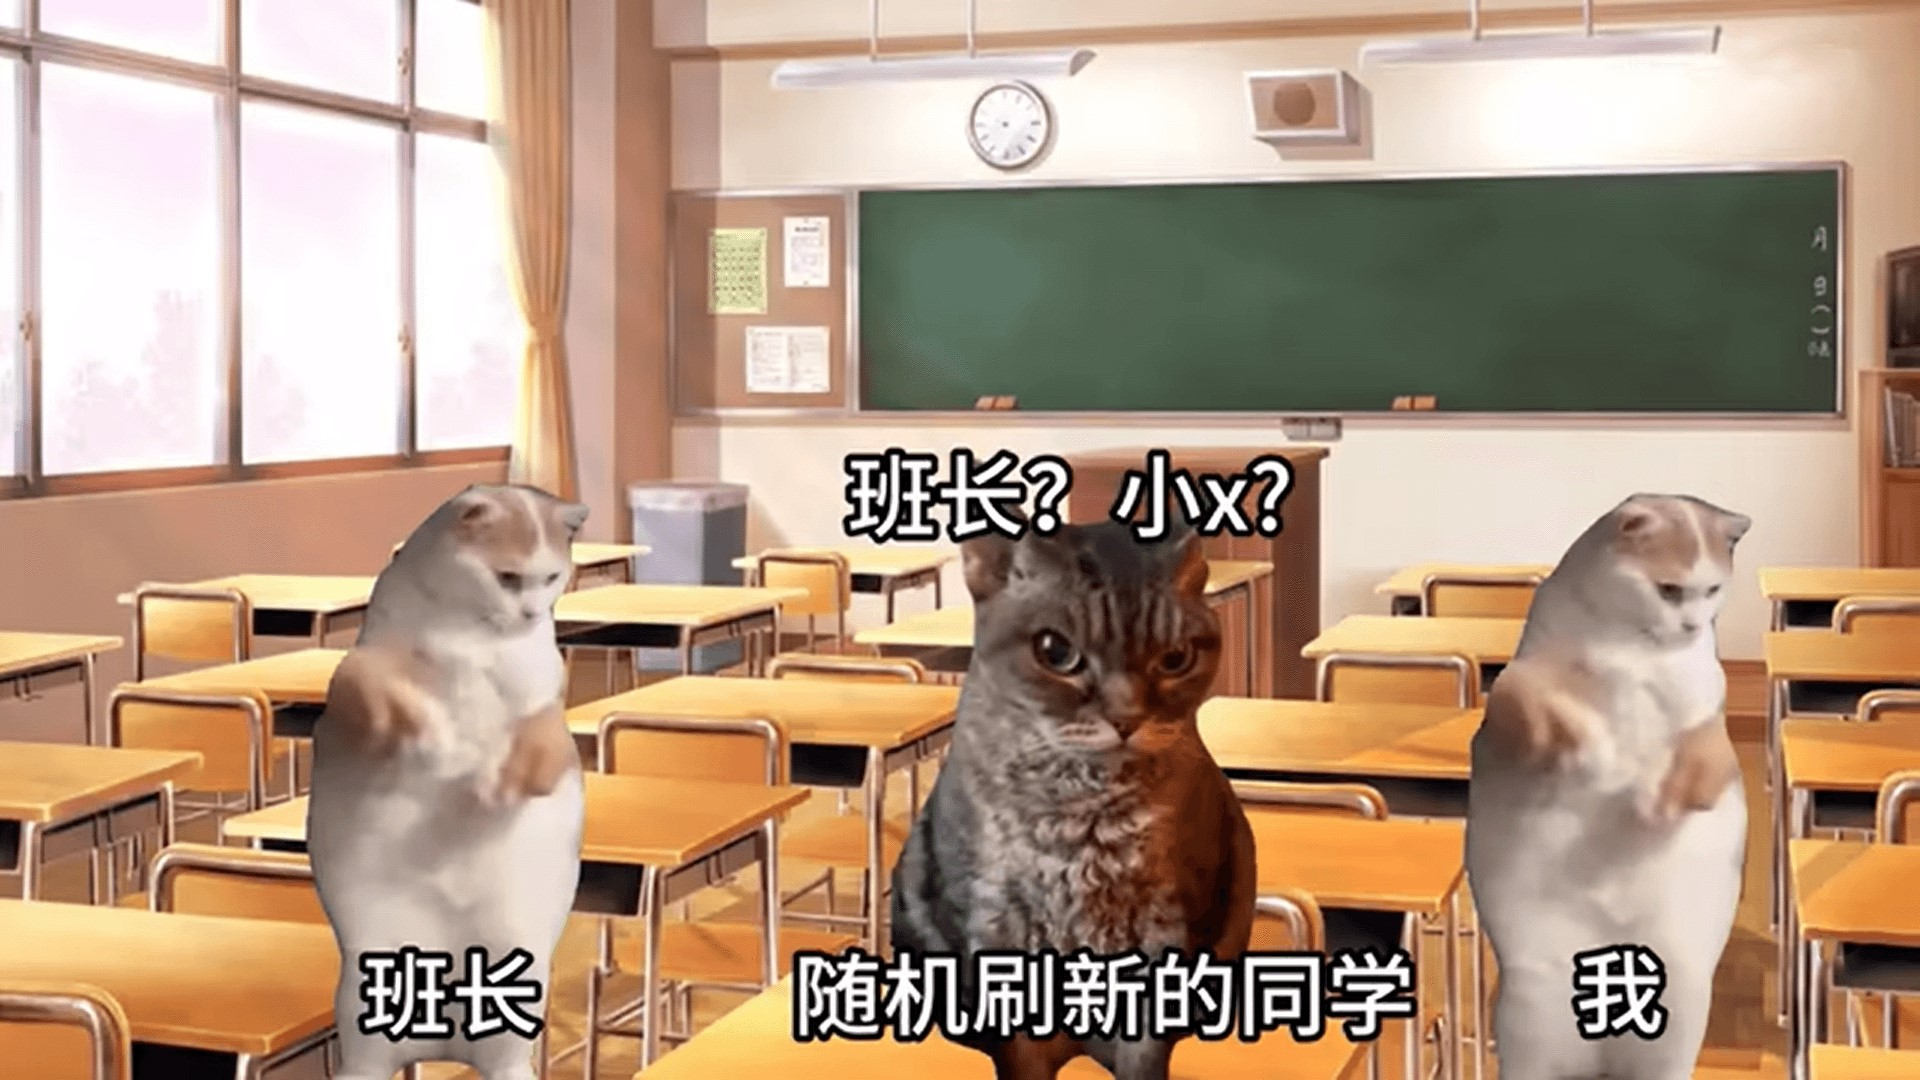 恐怖猫猫惊魂1